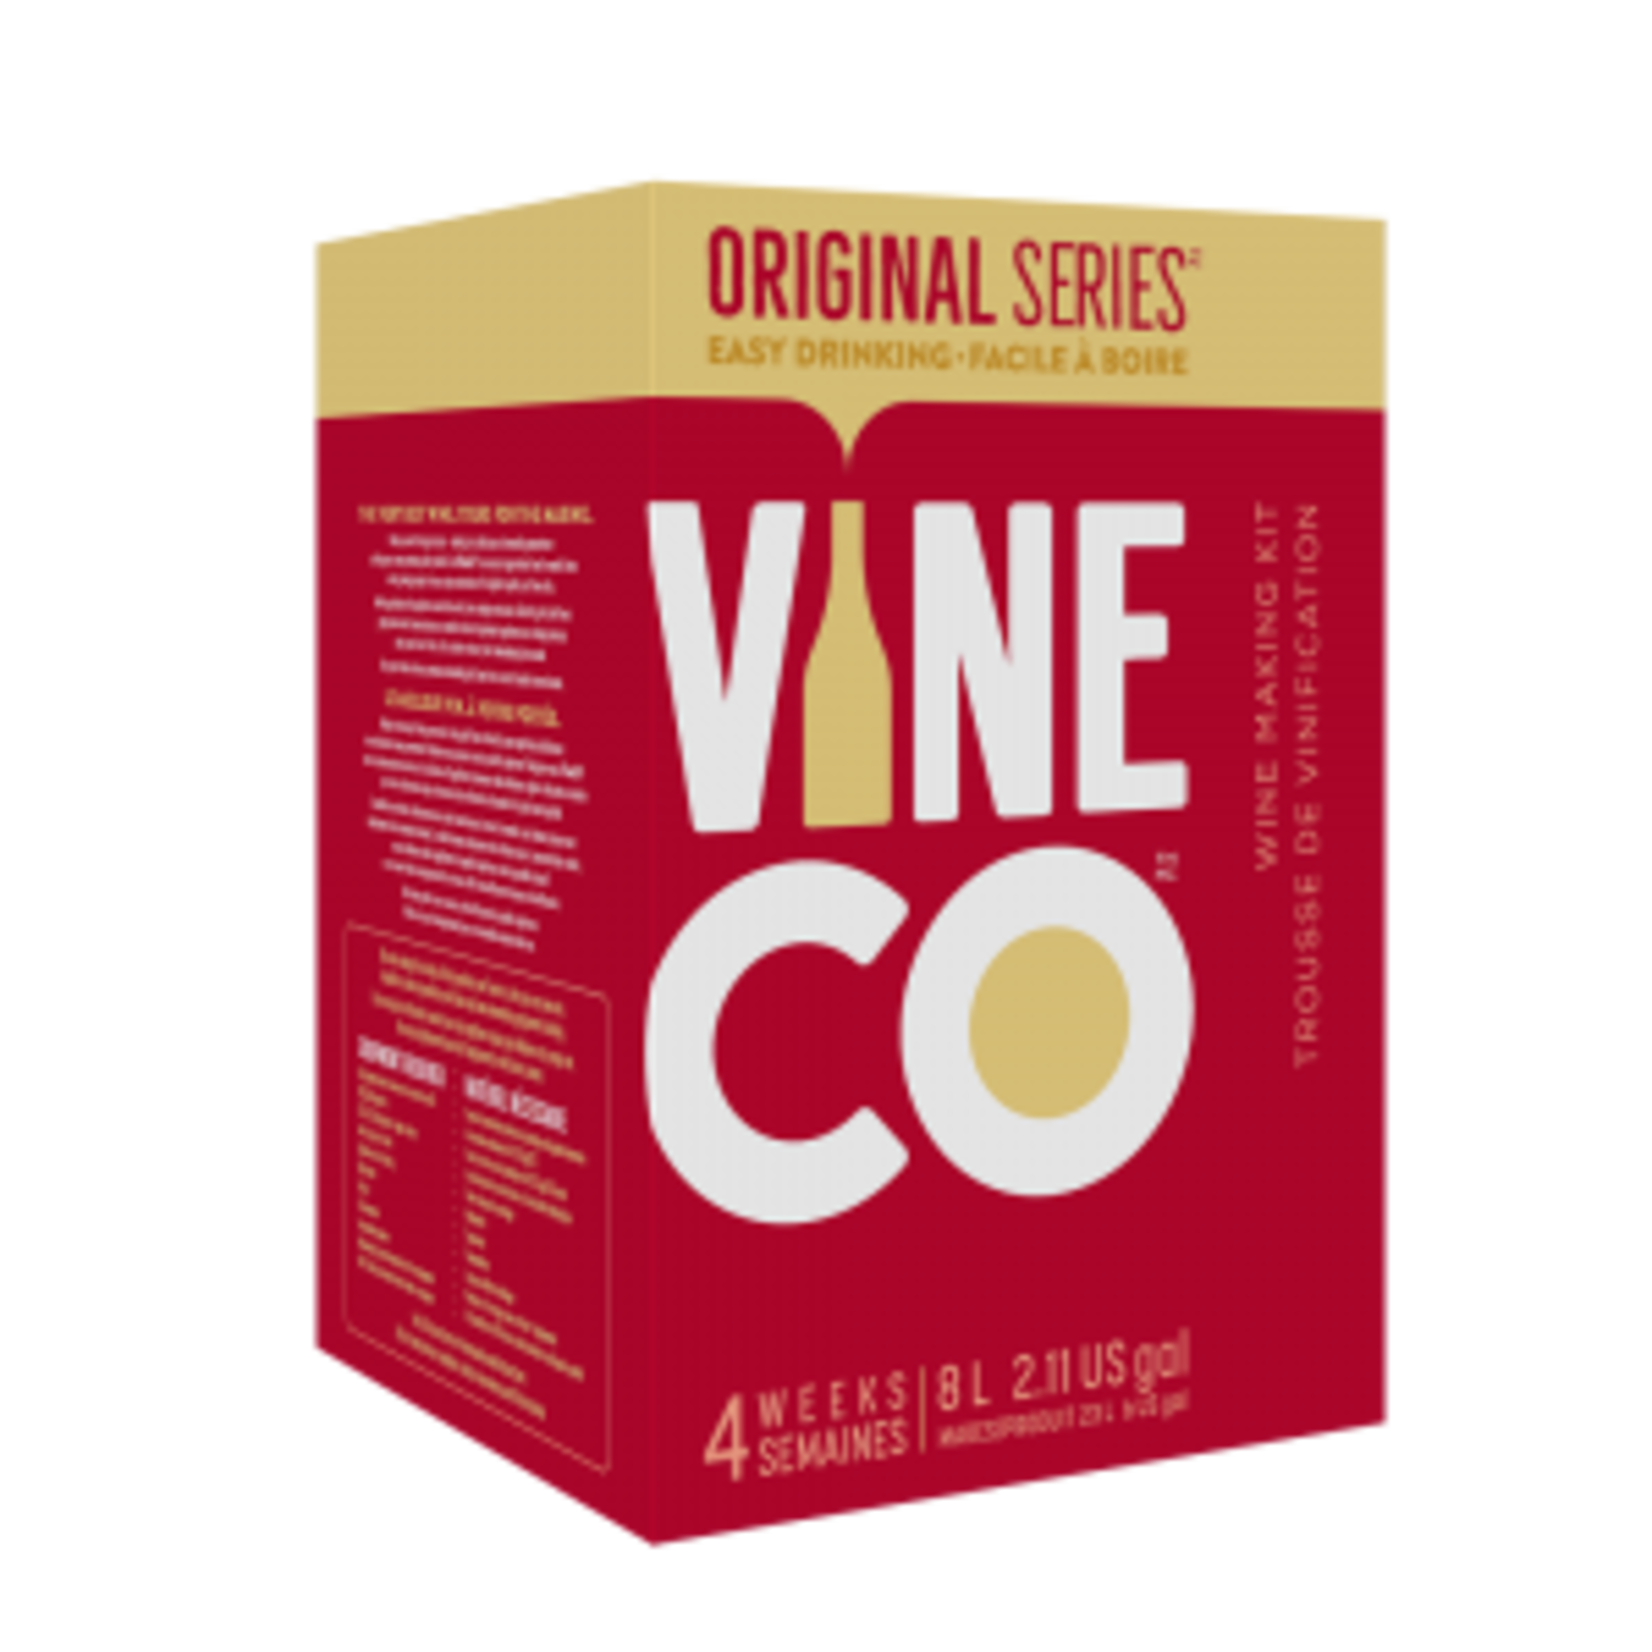 Vine Co. Original Series Malbec, Chile